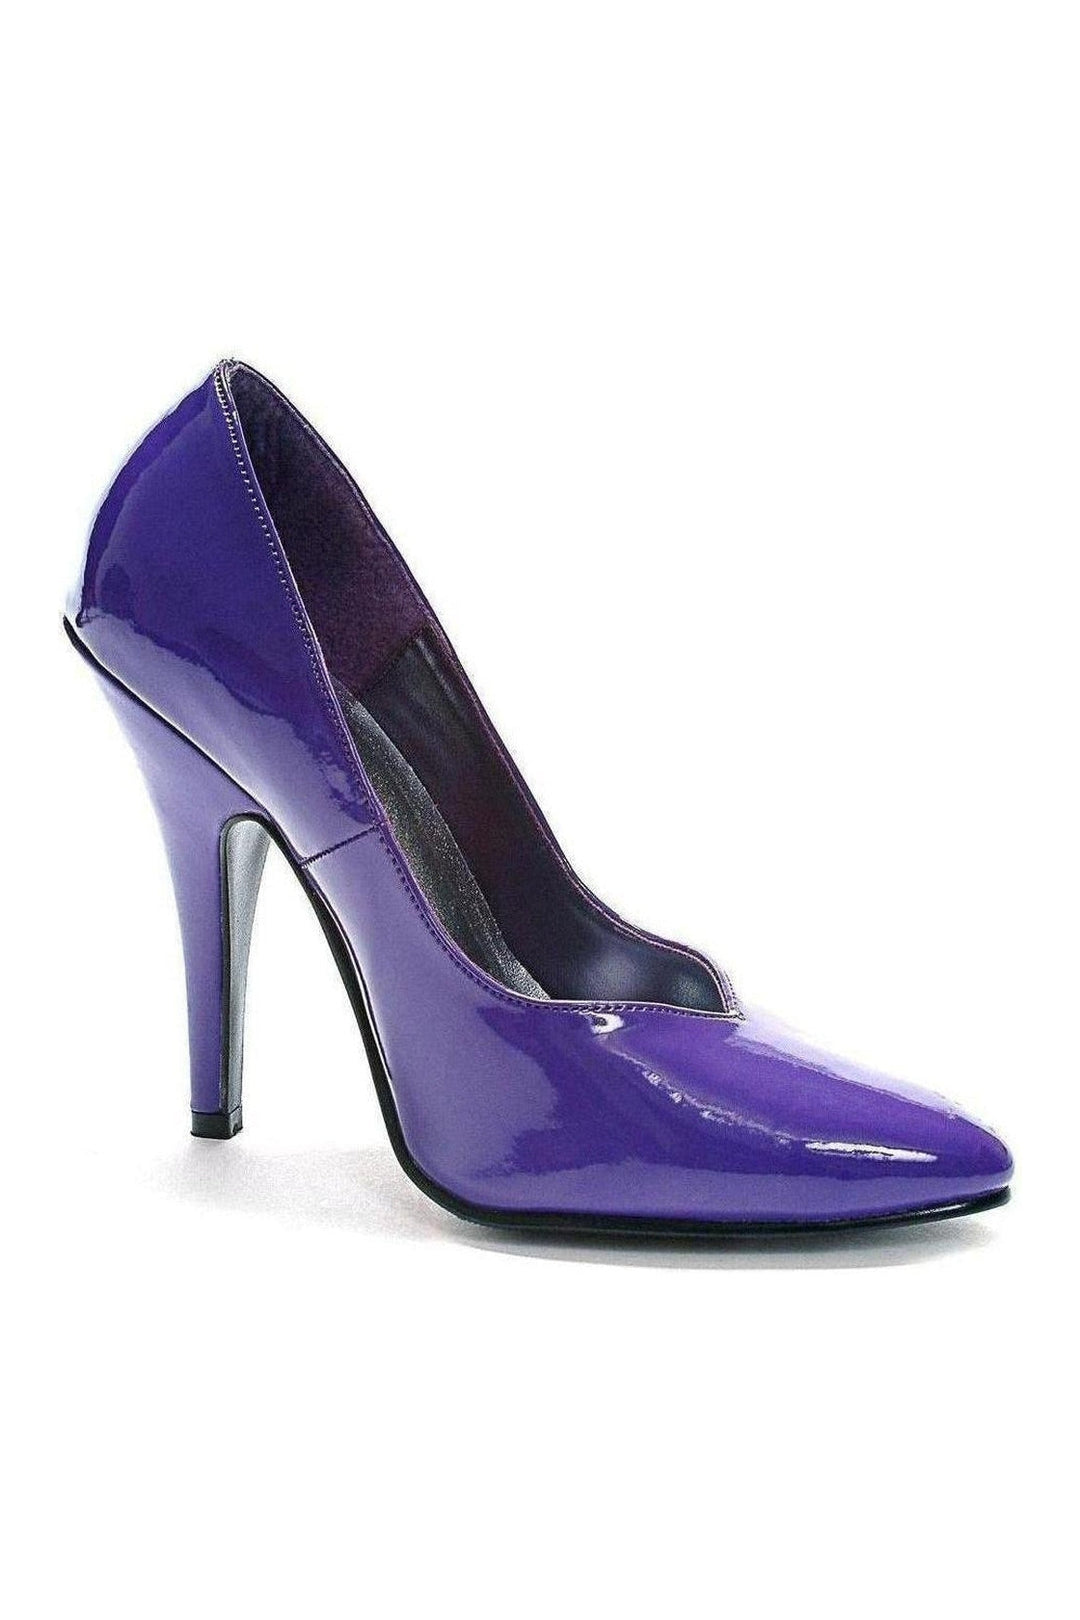 511-BRANDE Pump | Purple Patent-Pumps- Stripper Shoes at SEXYSHOES.COM